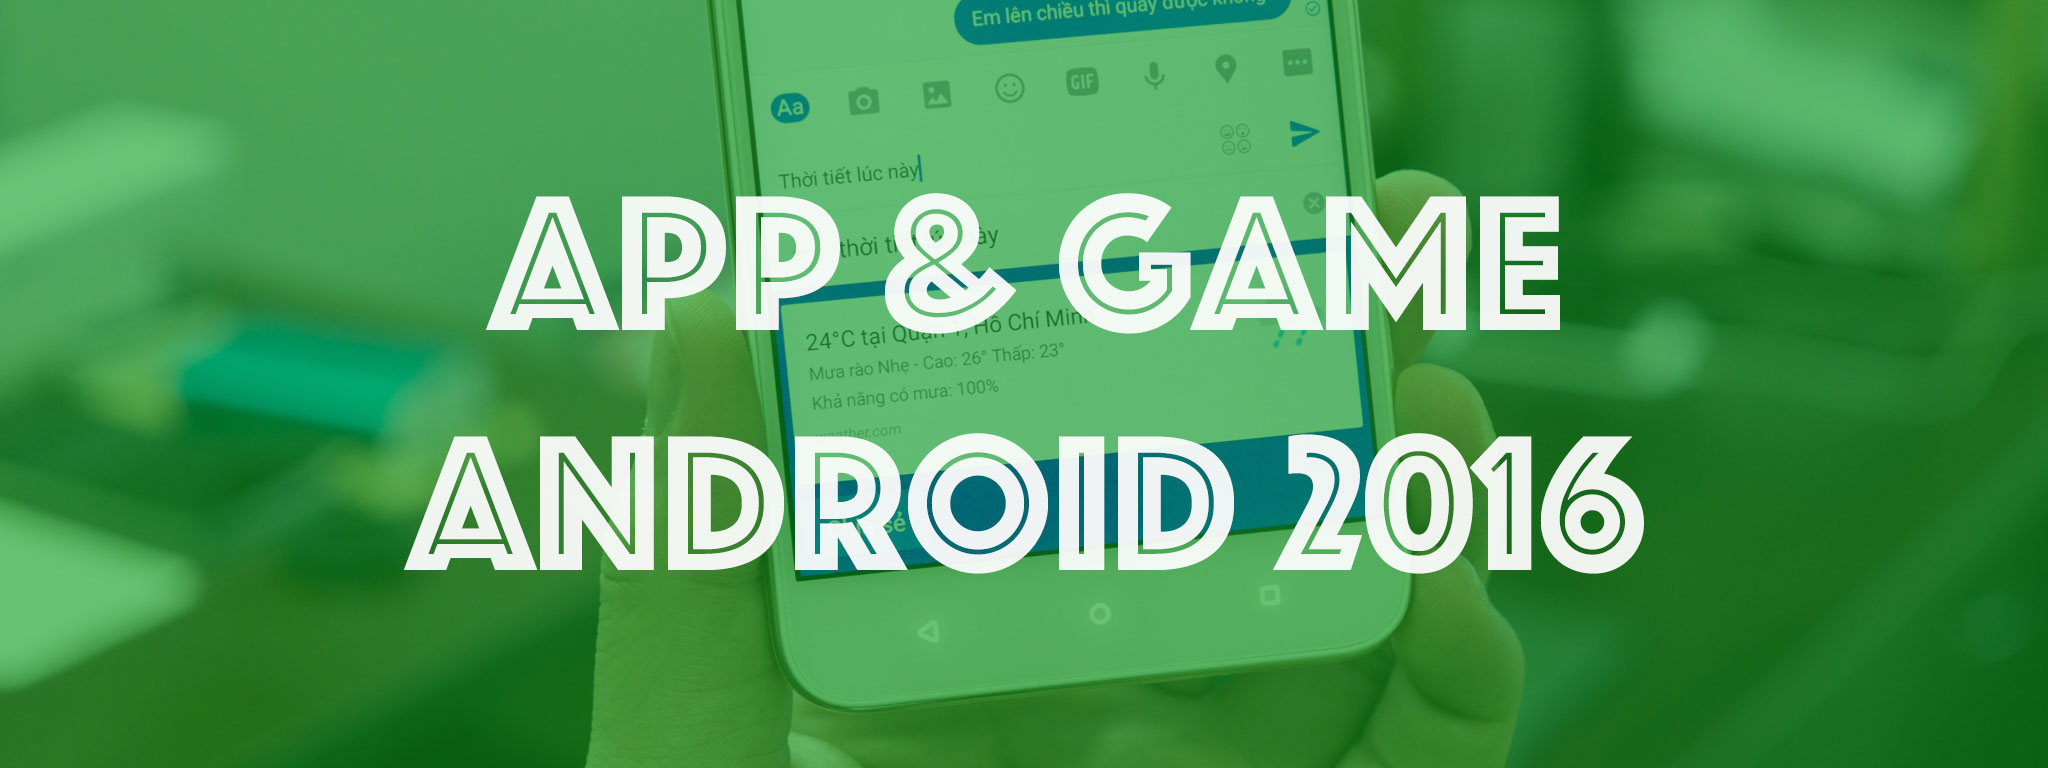 Mời chia sẻ app và game Android nổi bật năm 2016